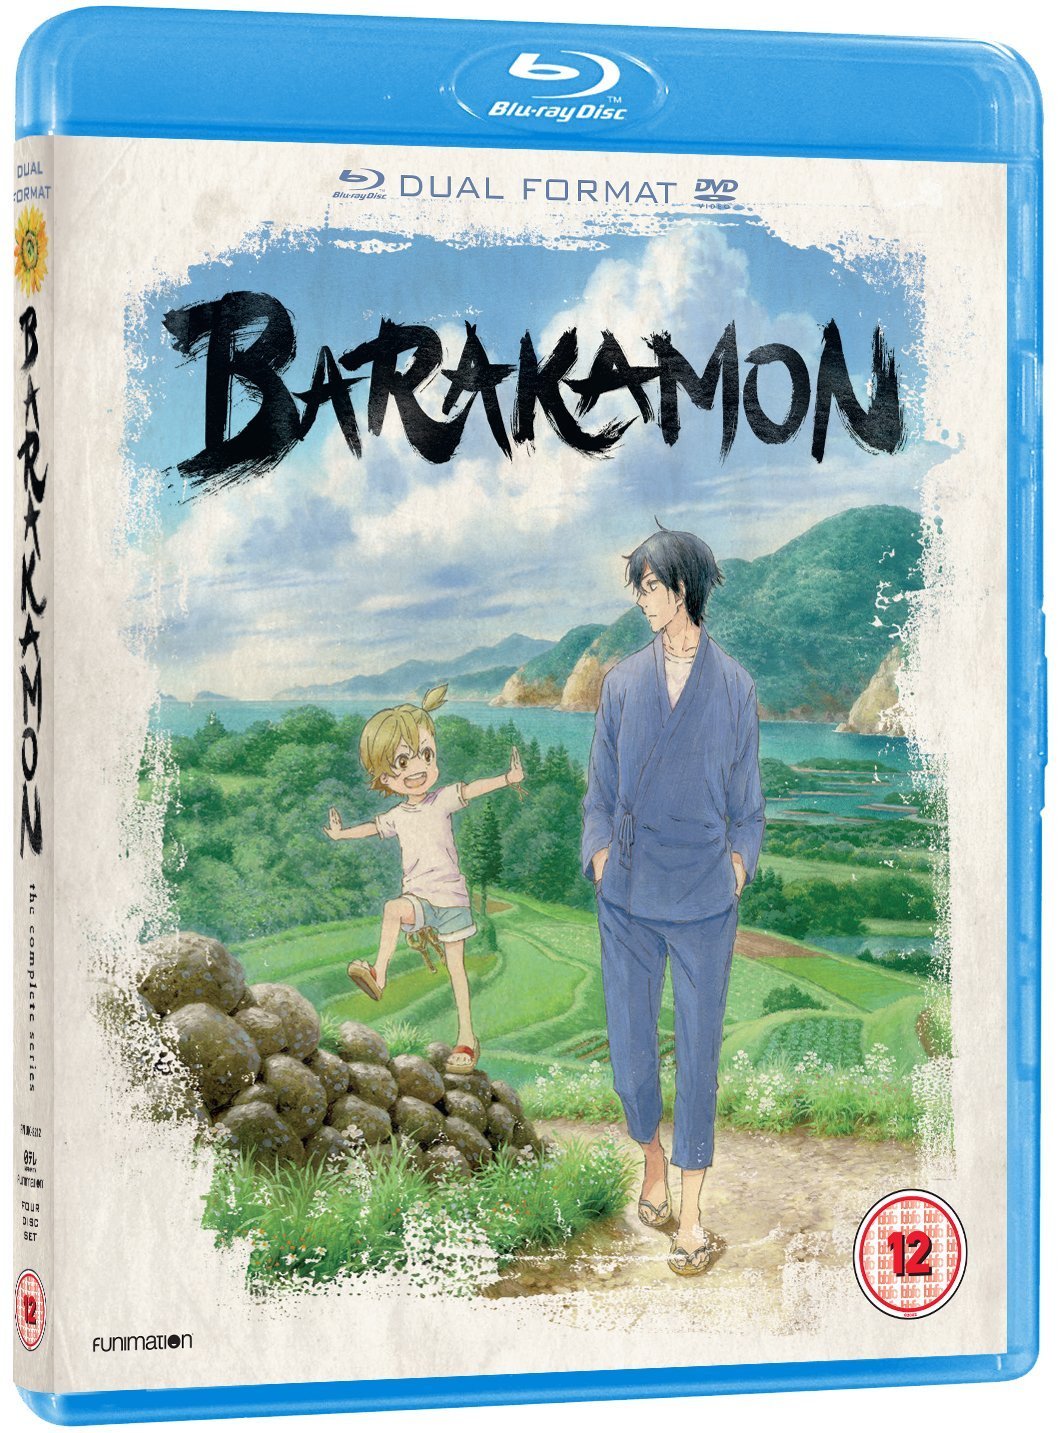 Barakamon Anime Review, by duchessliz